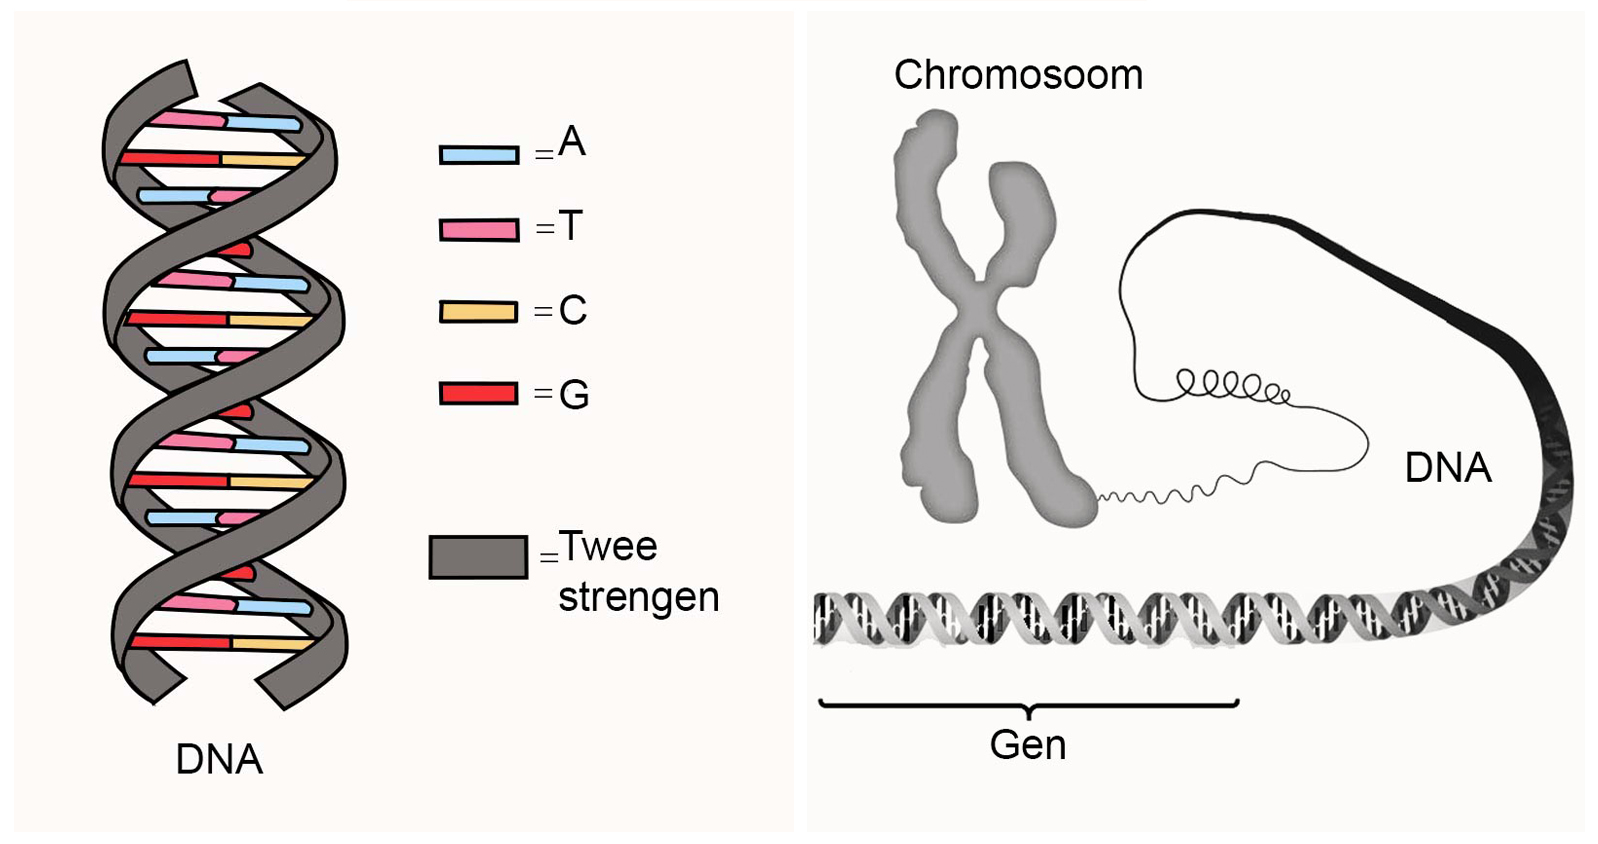 Кольцевая хромосома 2